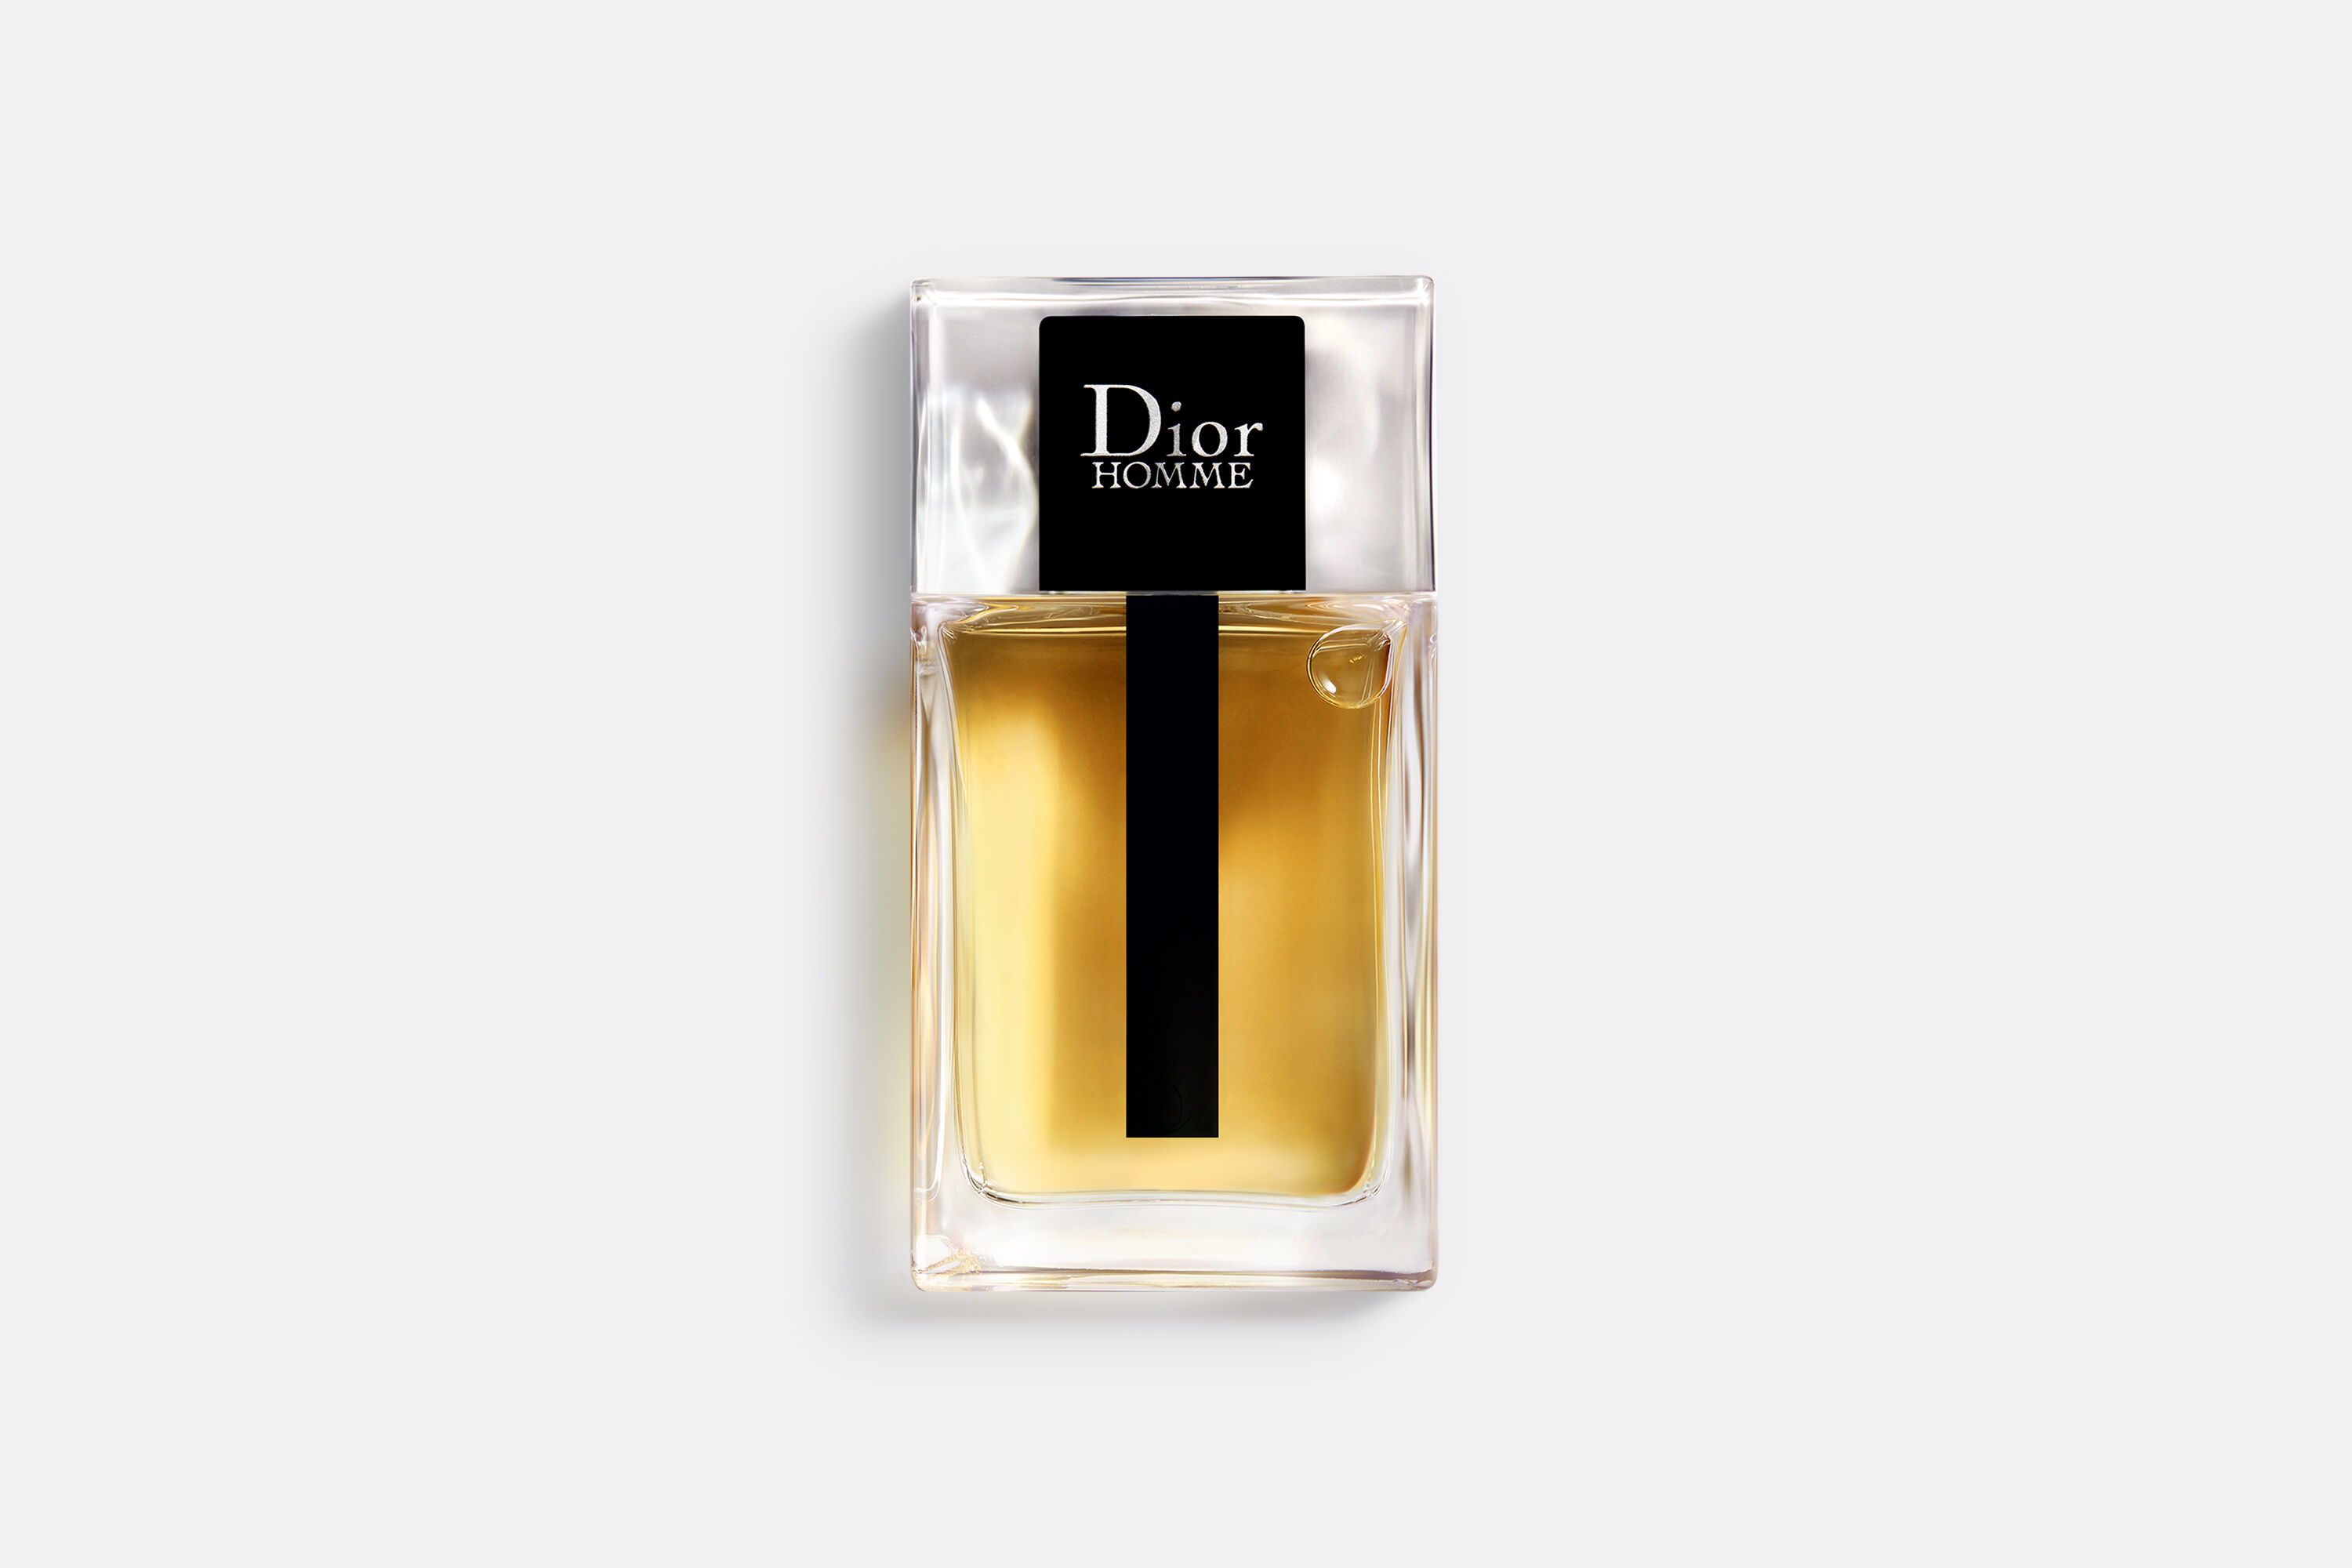 DIOR Homme Eau de Toilette Cologne Fragrance for Men | DIOR